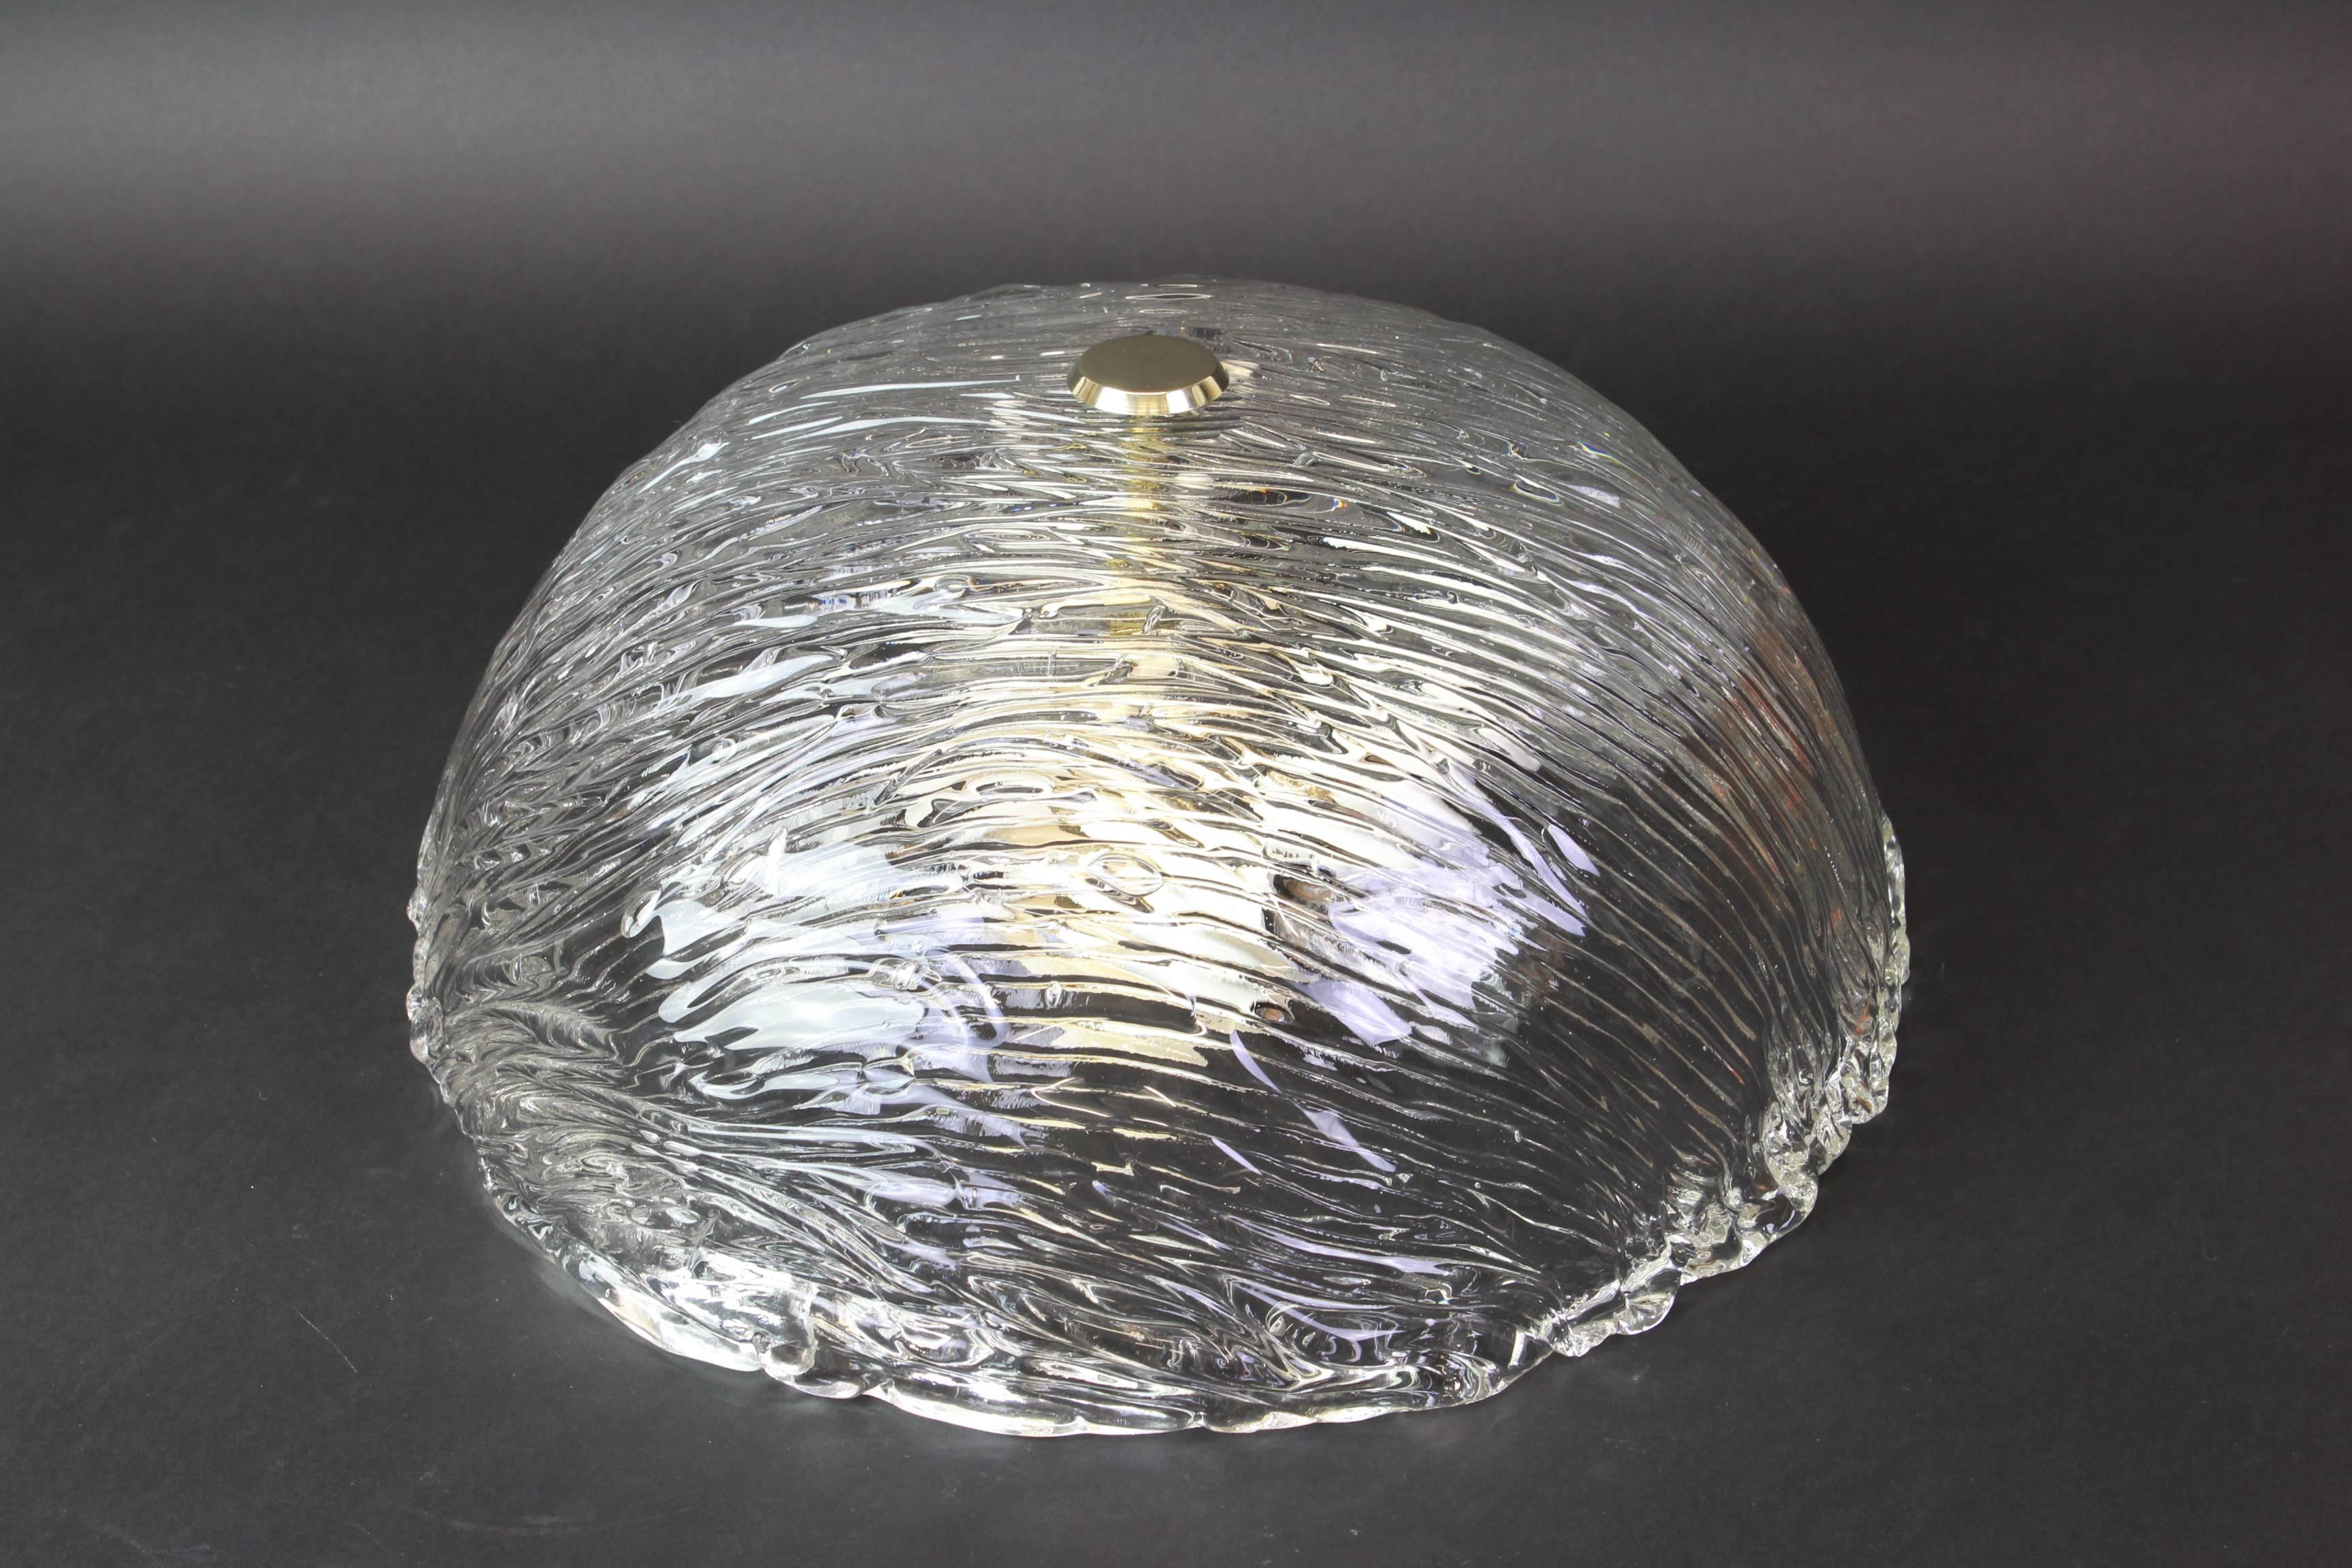 Venini-Deckenleuchten, Carlo Scarpa für Venini, 1950er Jahre.
Wunderbarer Lichteffekt.
Die stark strukturierte und leicht schillernde Glaskuppel wird von einem Messingknauf gehalten

Hochwertig und in sehr gutem Zustand. Gereinigt, gut verkabelt